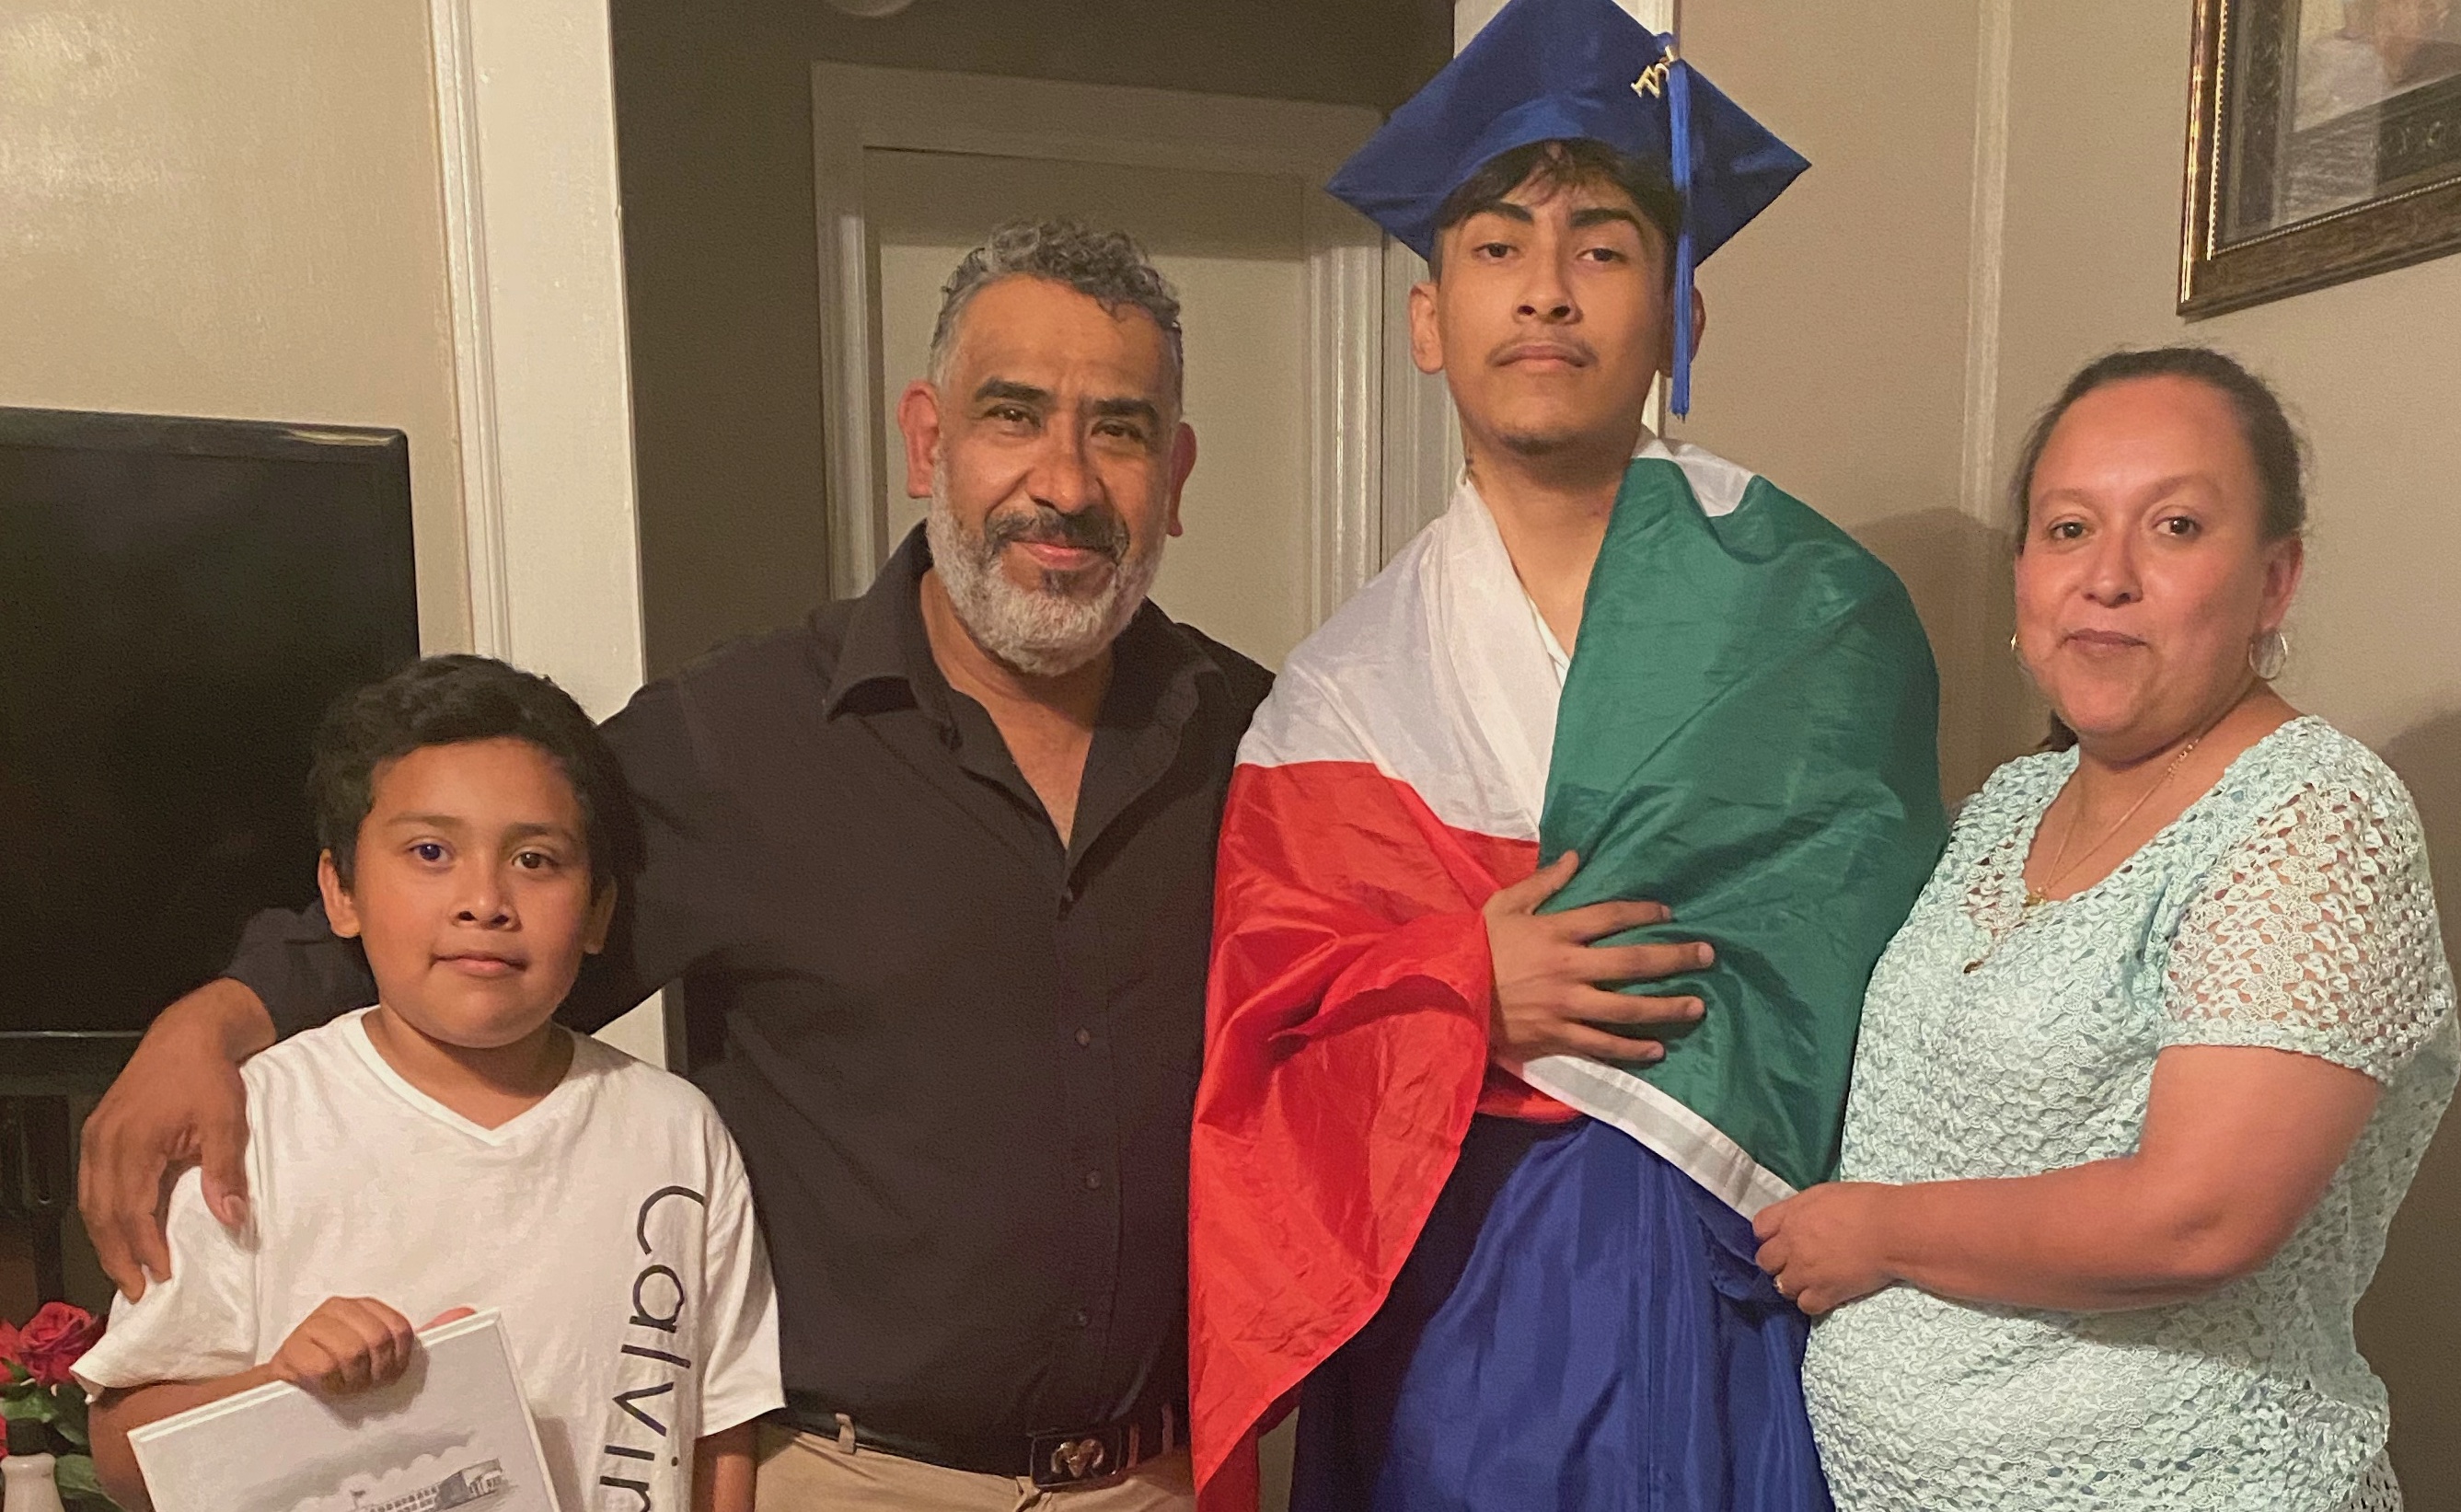 Gymnasiast verweigert das Diplom, nachdem er die mexikanische Flagge über dem Kleid getragen hat